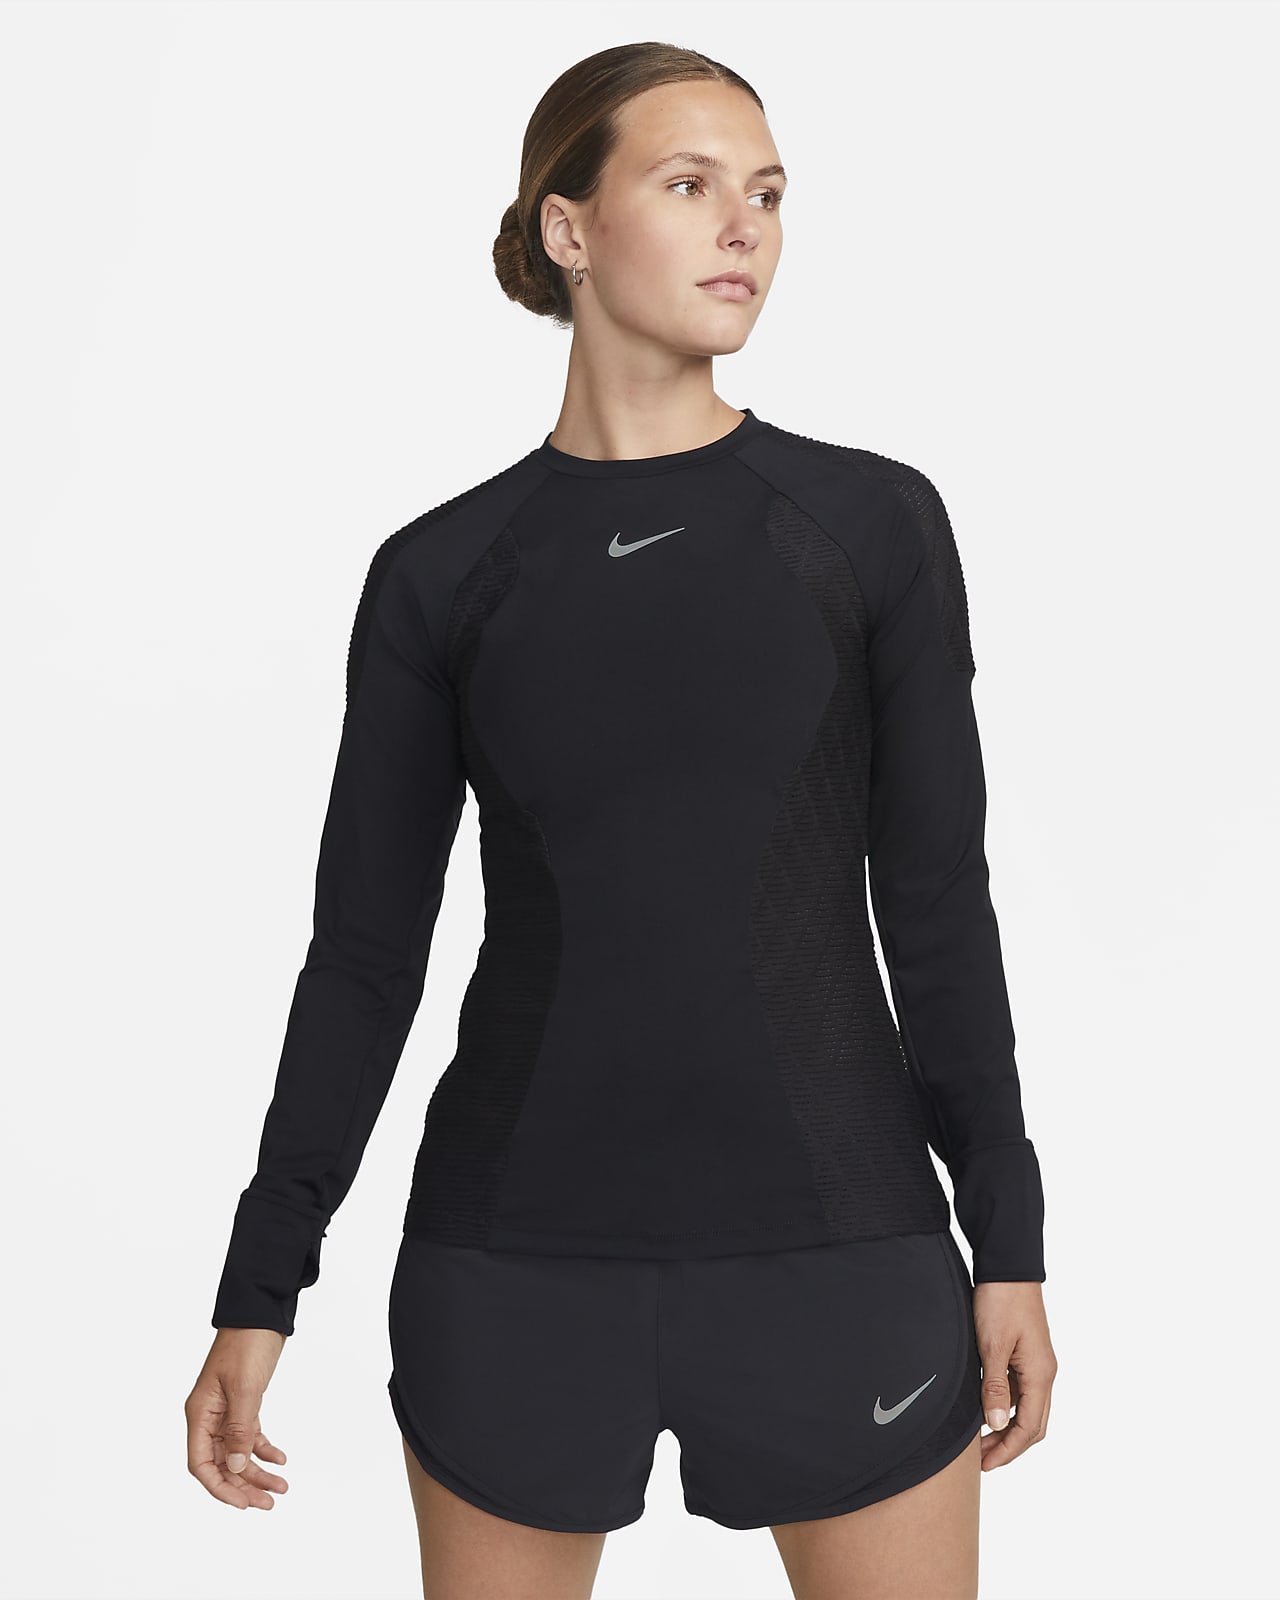 skylle prins Beskæftiget Nike Dri-FIT ADV Run Division Women's Long-Sleeve Running Top. Nike CA